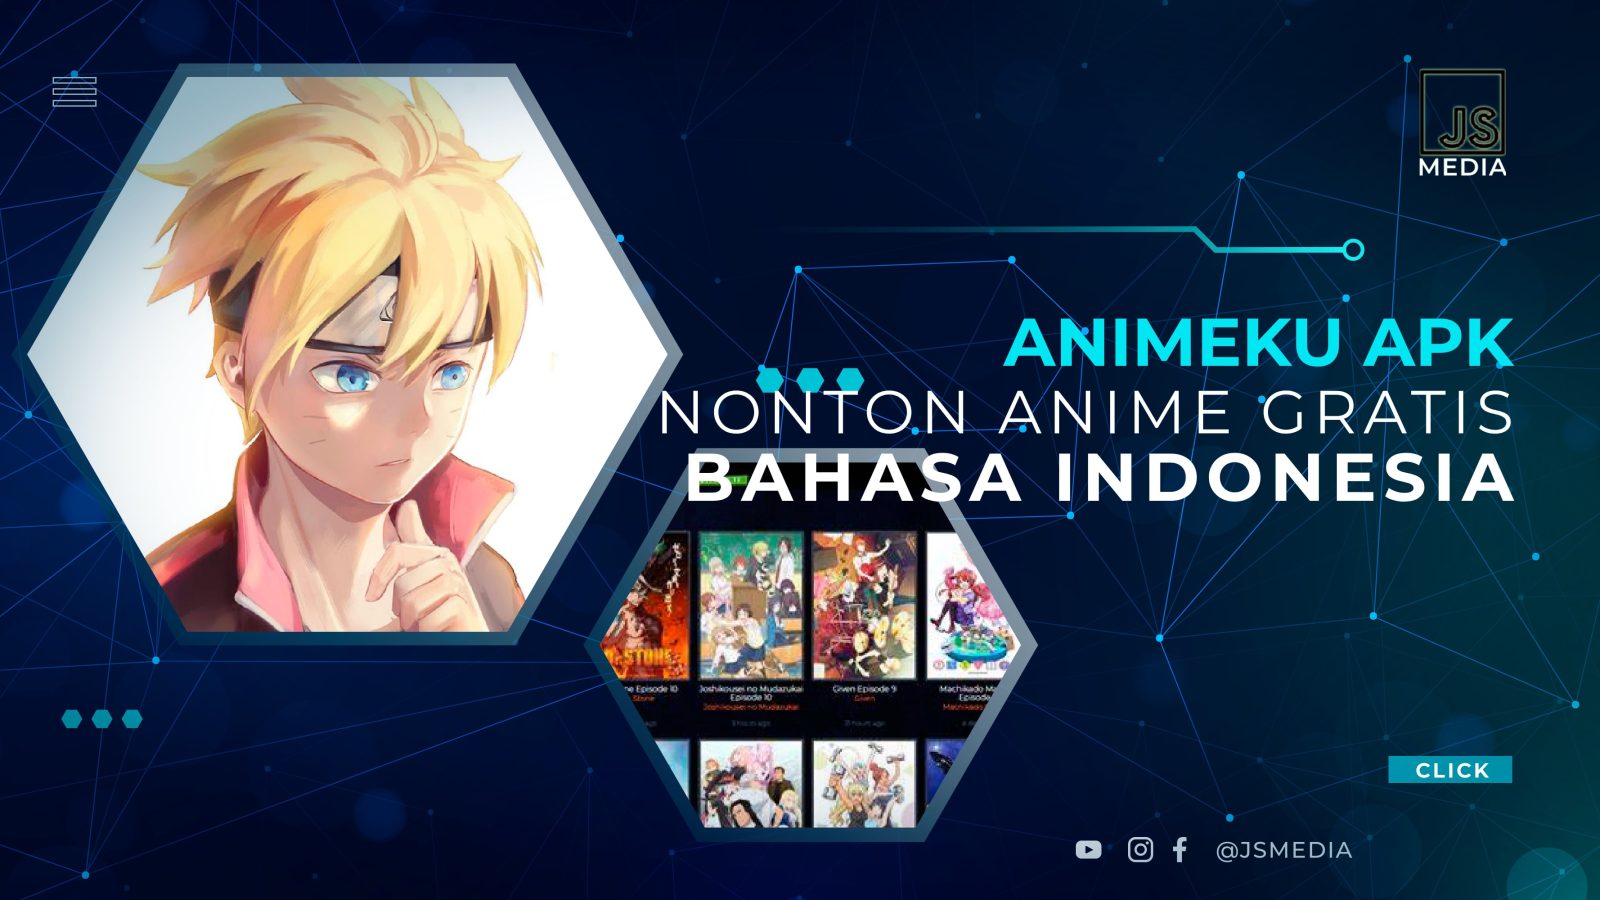 Download AnimeKu APK, Opsi Nonton Anime Gratis dengan Terjemah Bahasa Indonesia